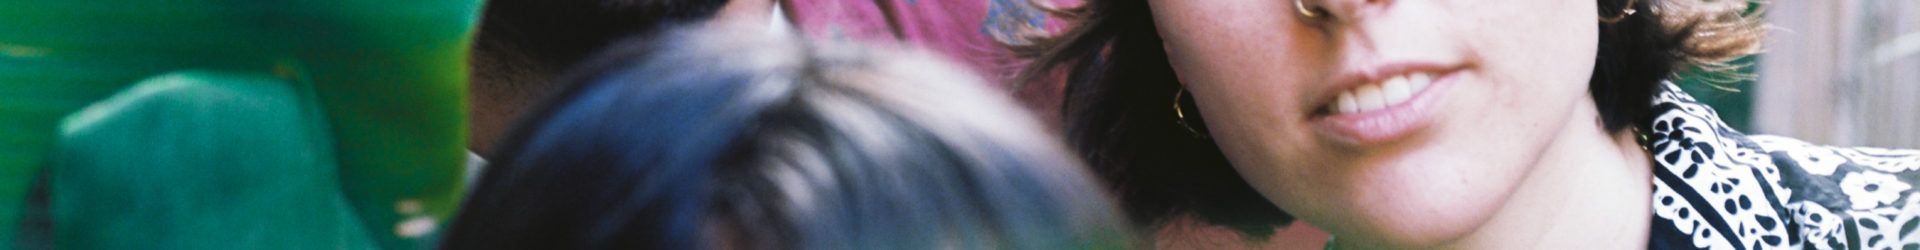 Borito nos recuerda la dulzura de la vida en su brillante disco debut